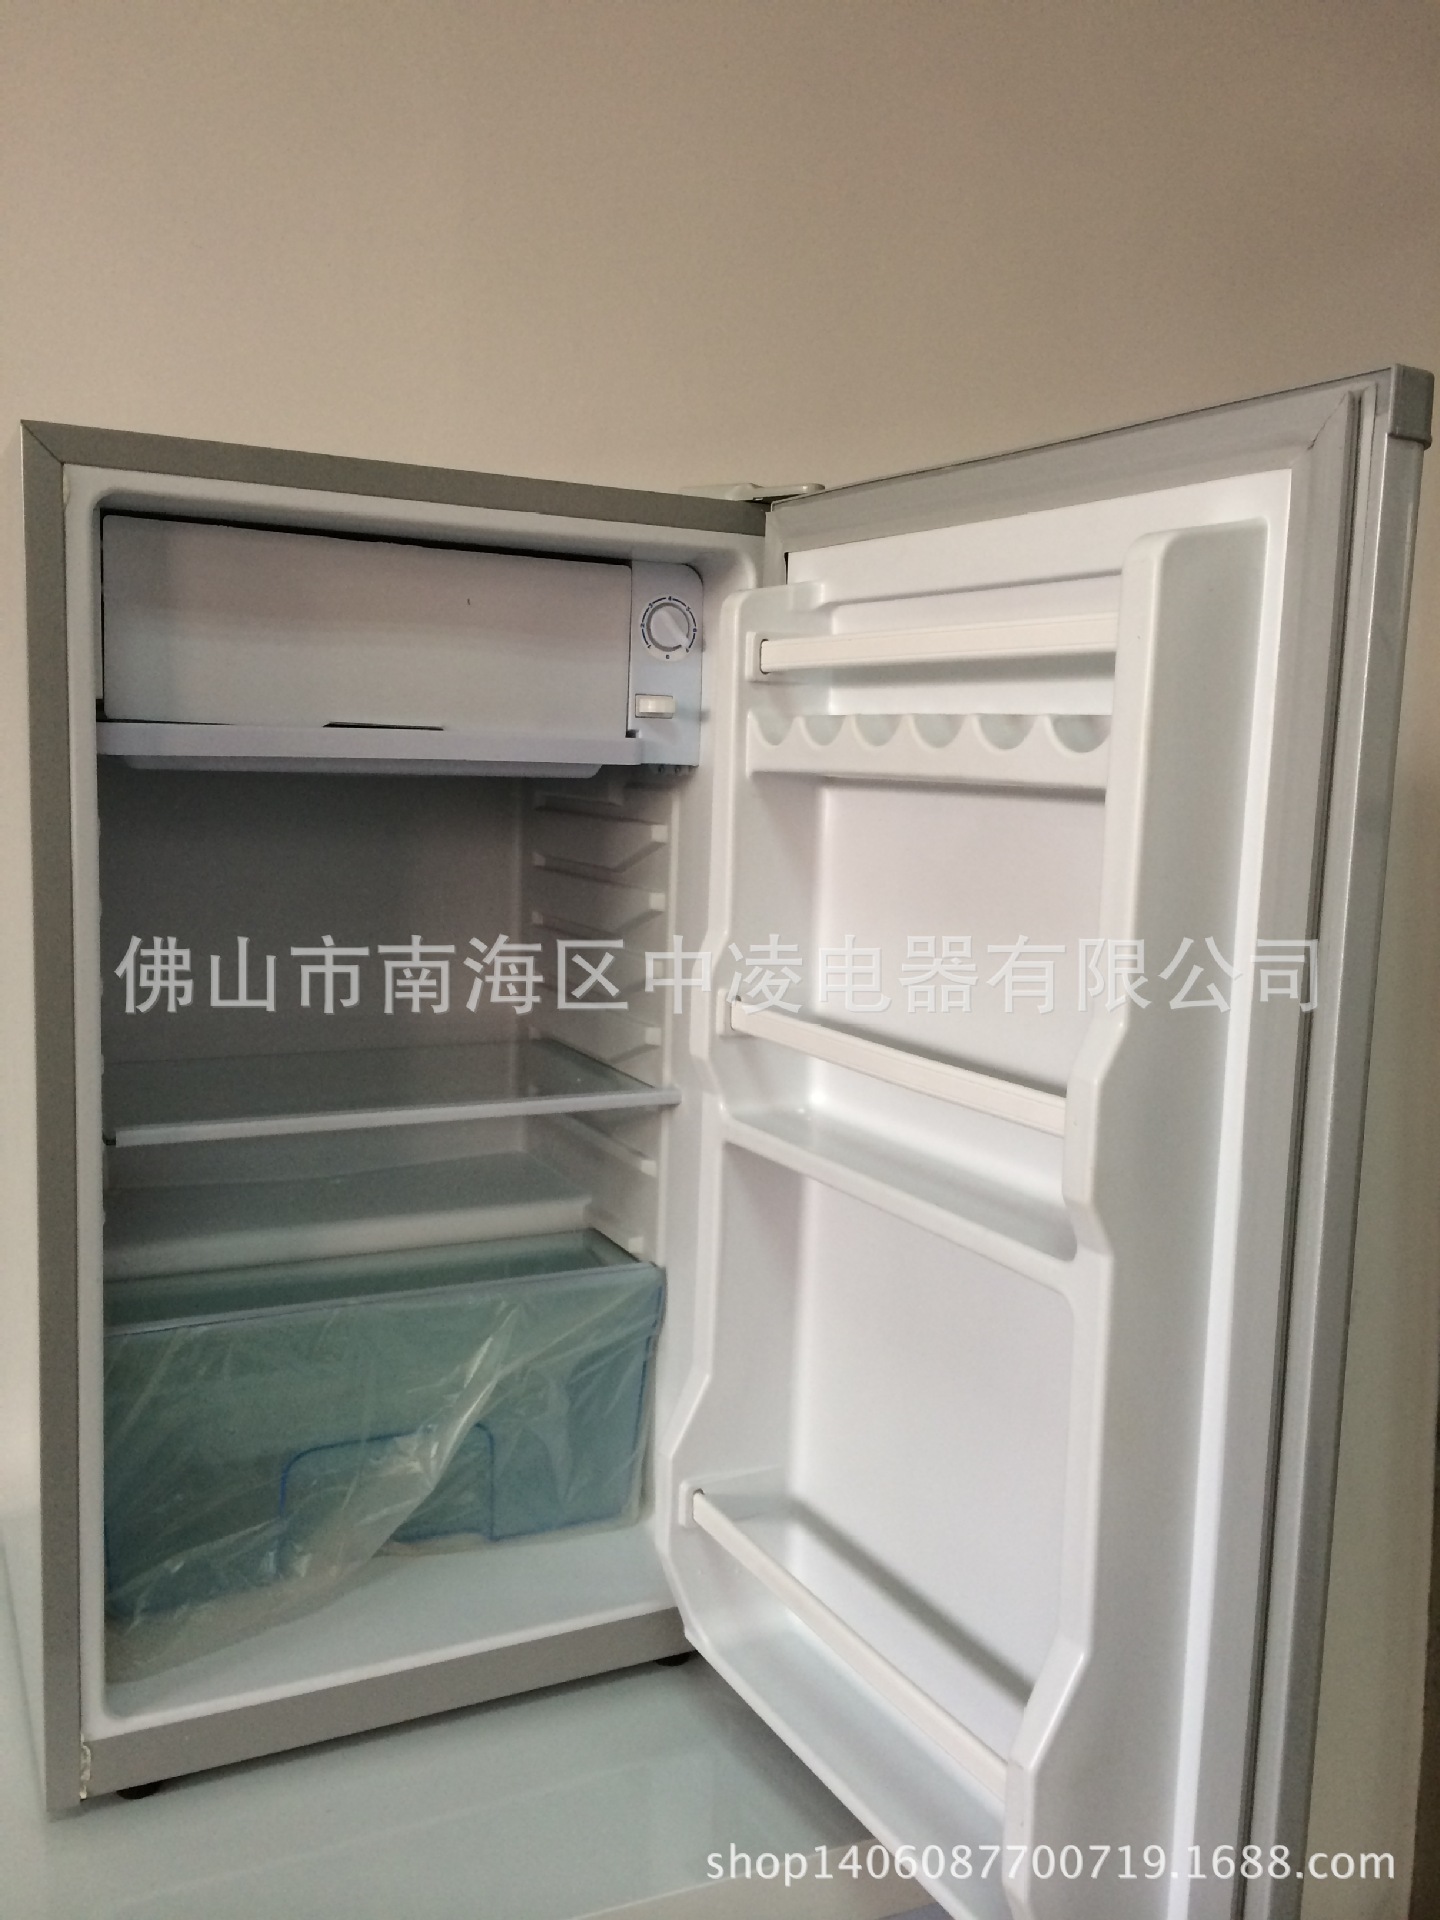 出口冰箱 110v冰箱 冰箱 小型冰箱 单门冰箱  厂家直销 现货充足